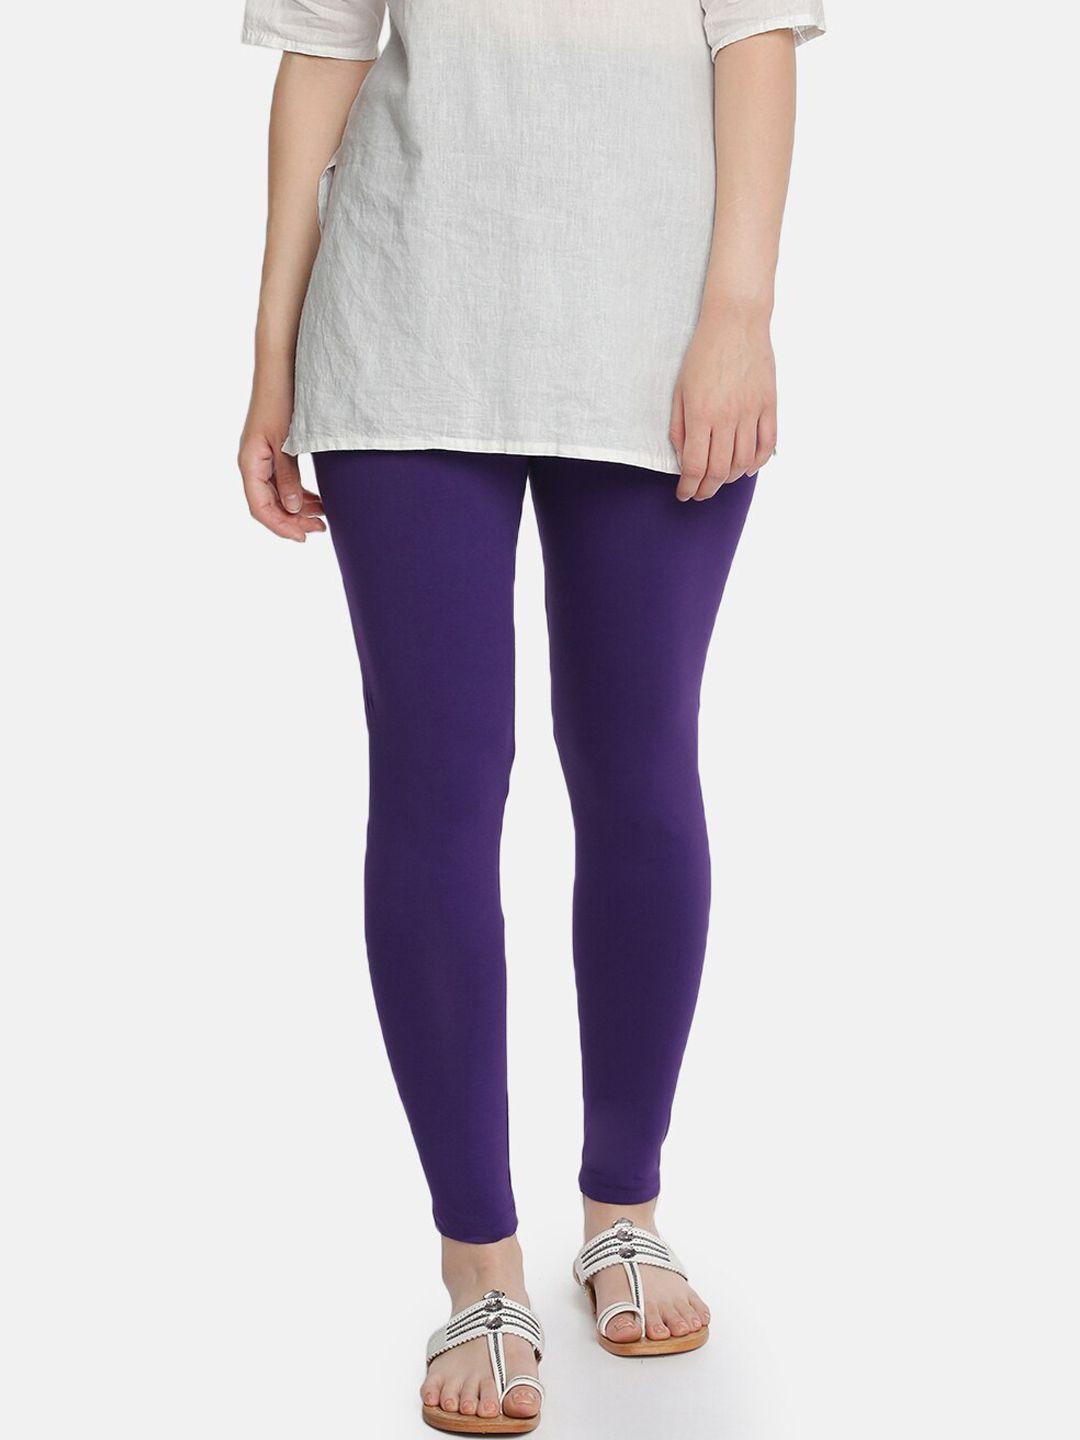 dollar missy women purple solid ankle-length leggings